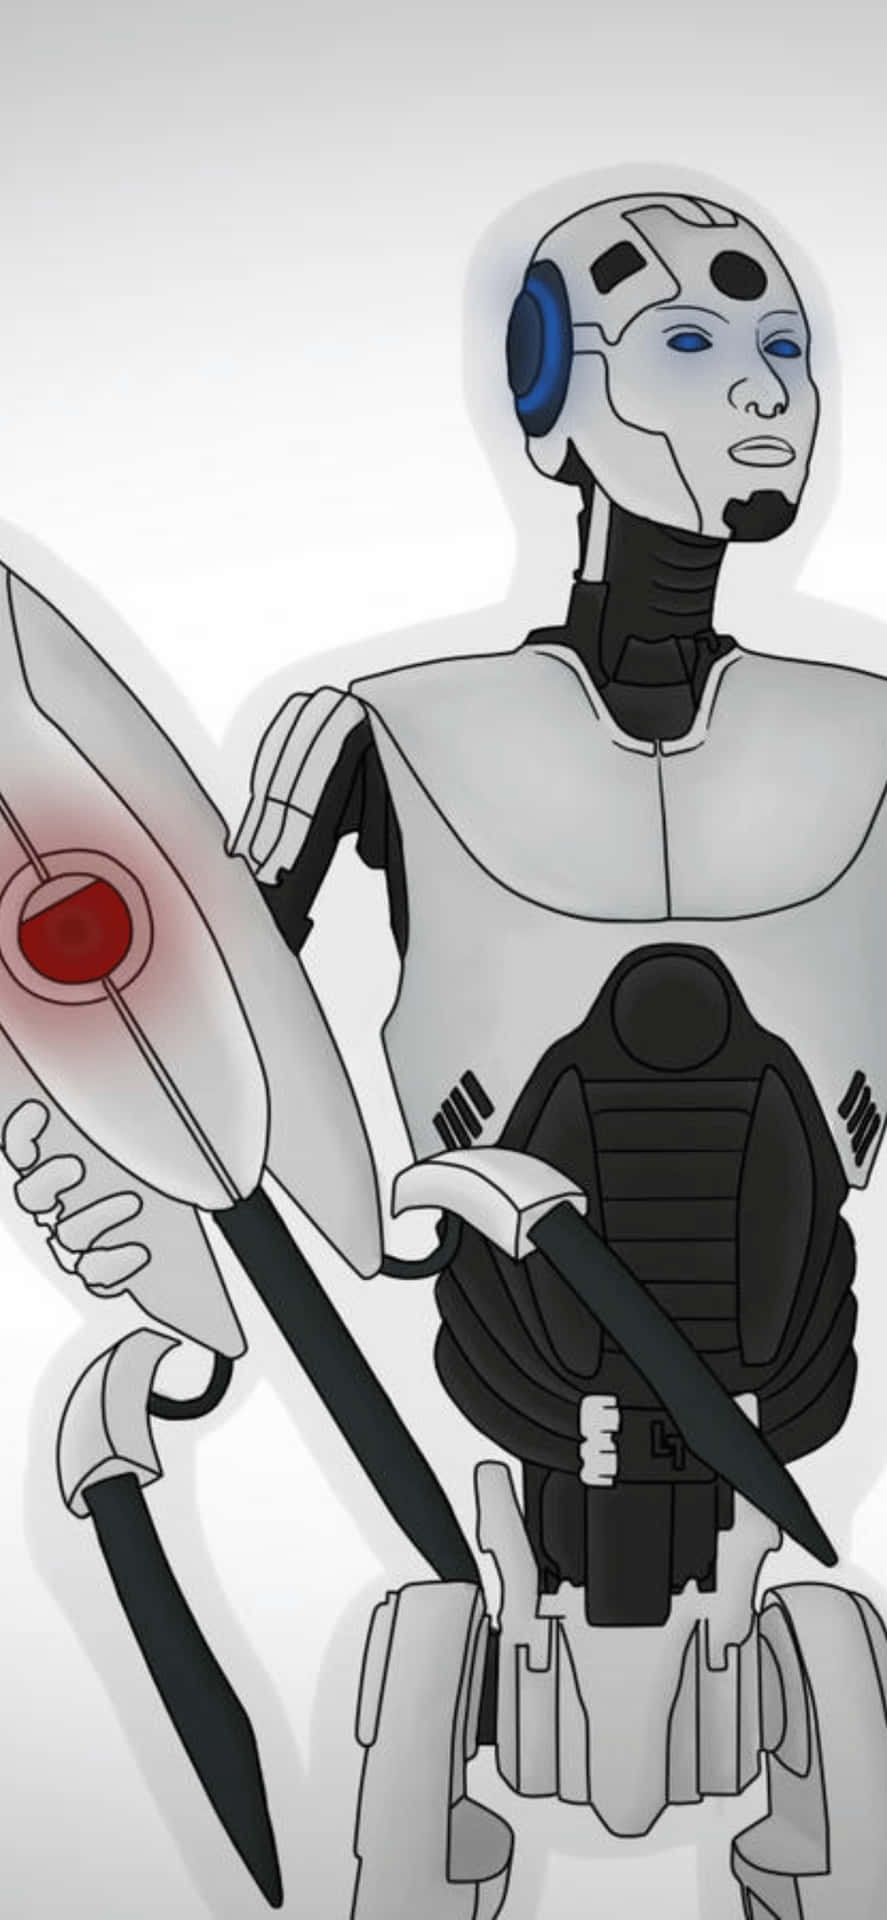 Enrobot Som Håller I Ett Svärd Och En Kniv